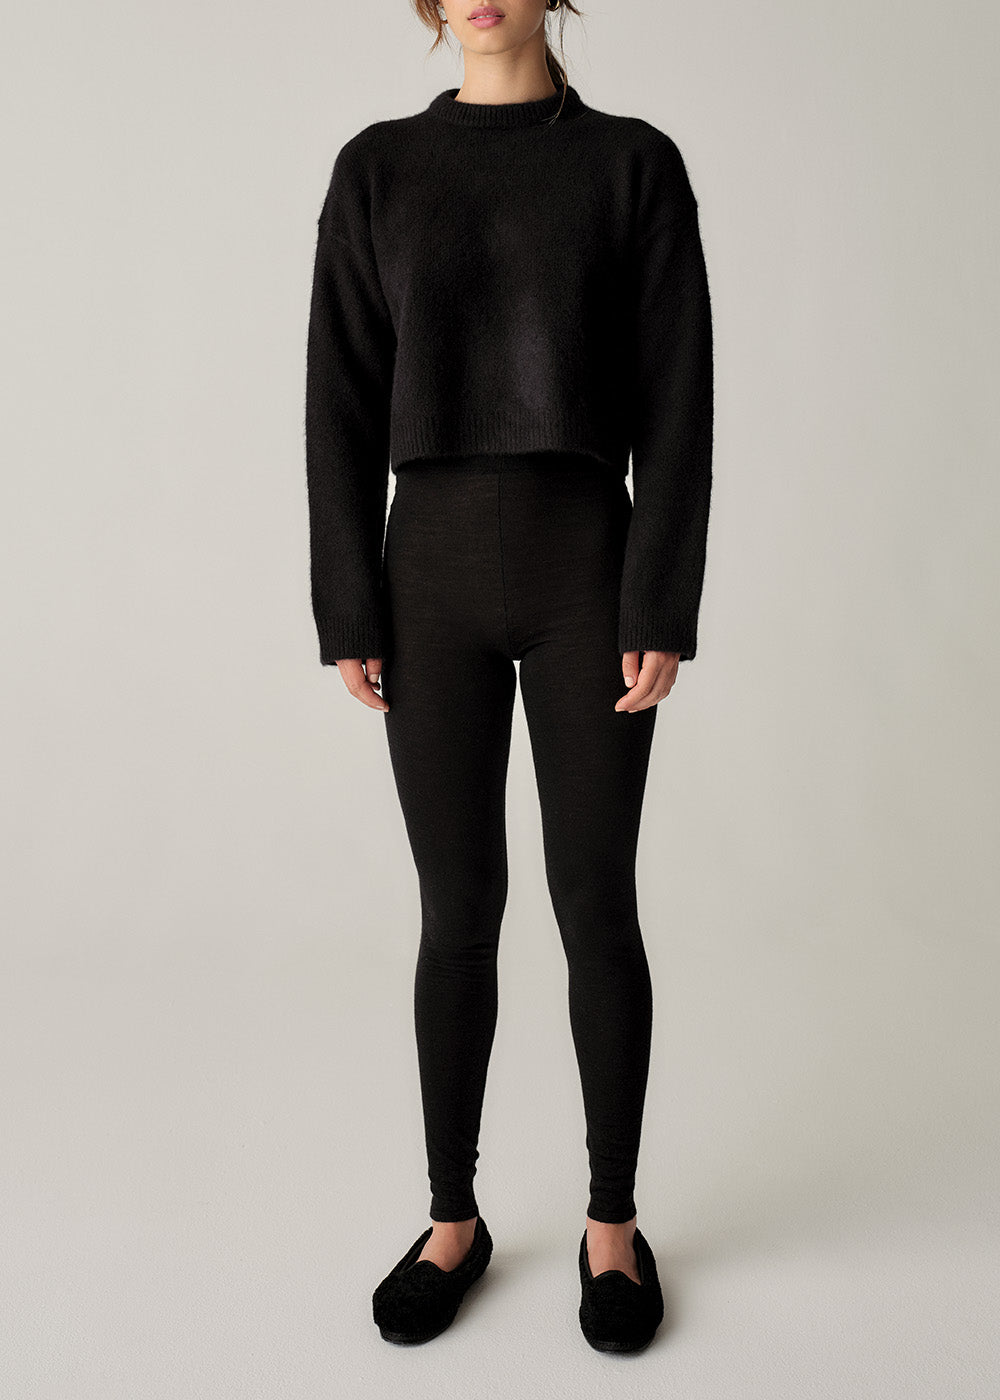 Tonya Cashmere Leggings - Medium / Black